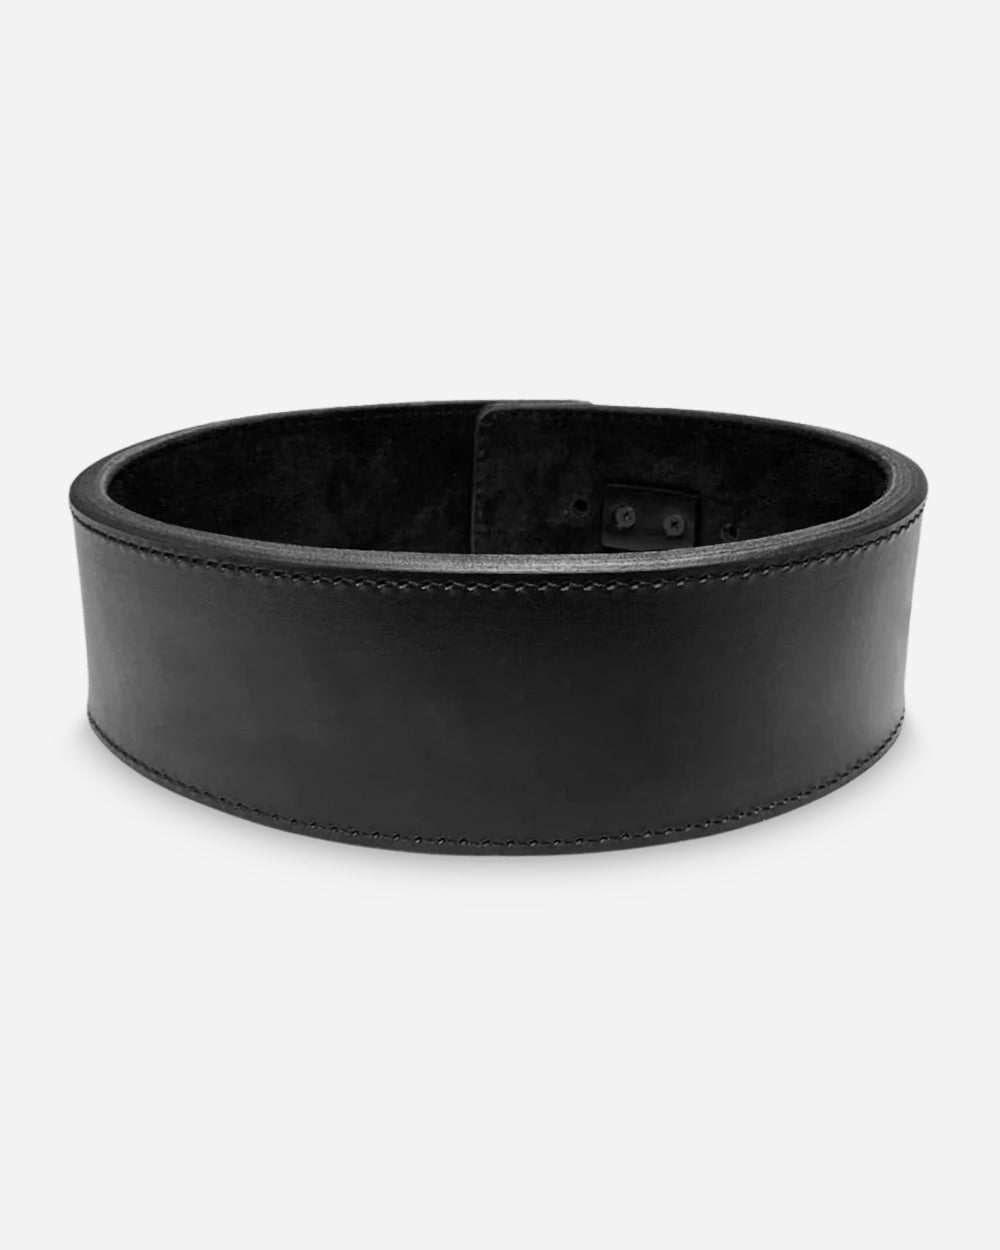 Adjustable Lever Belt 10 mm - Black